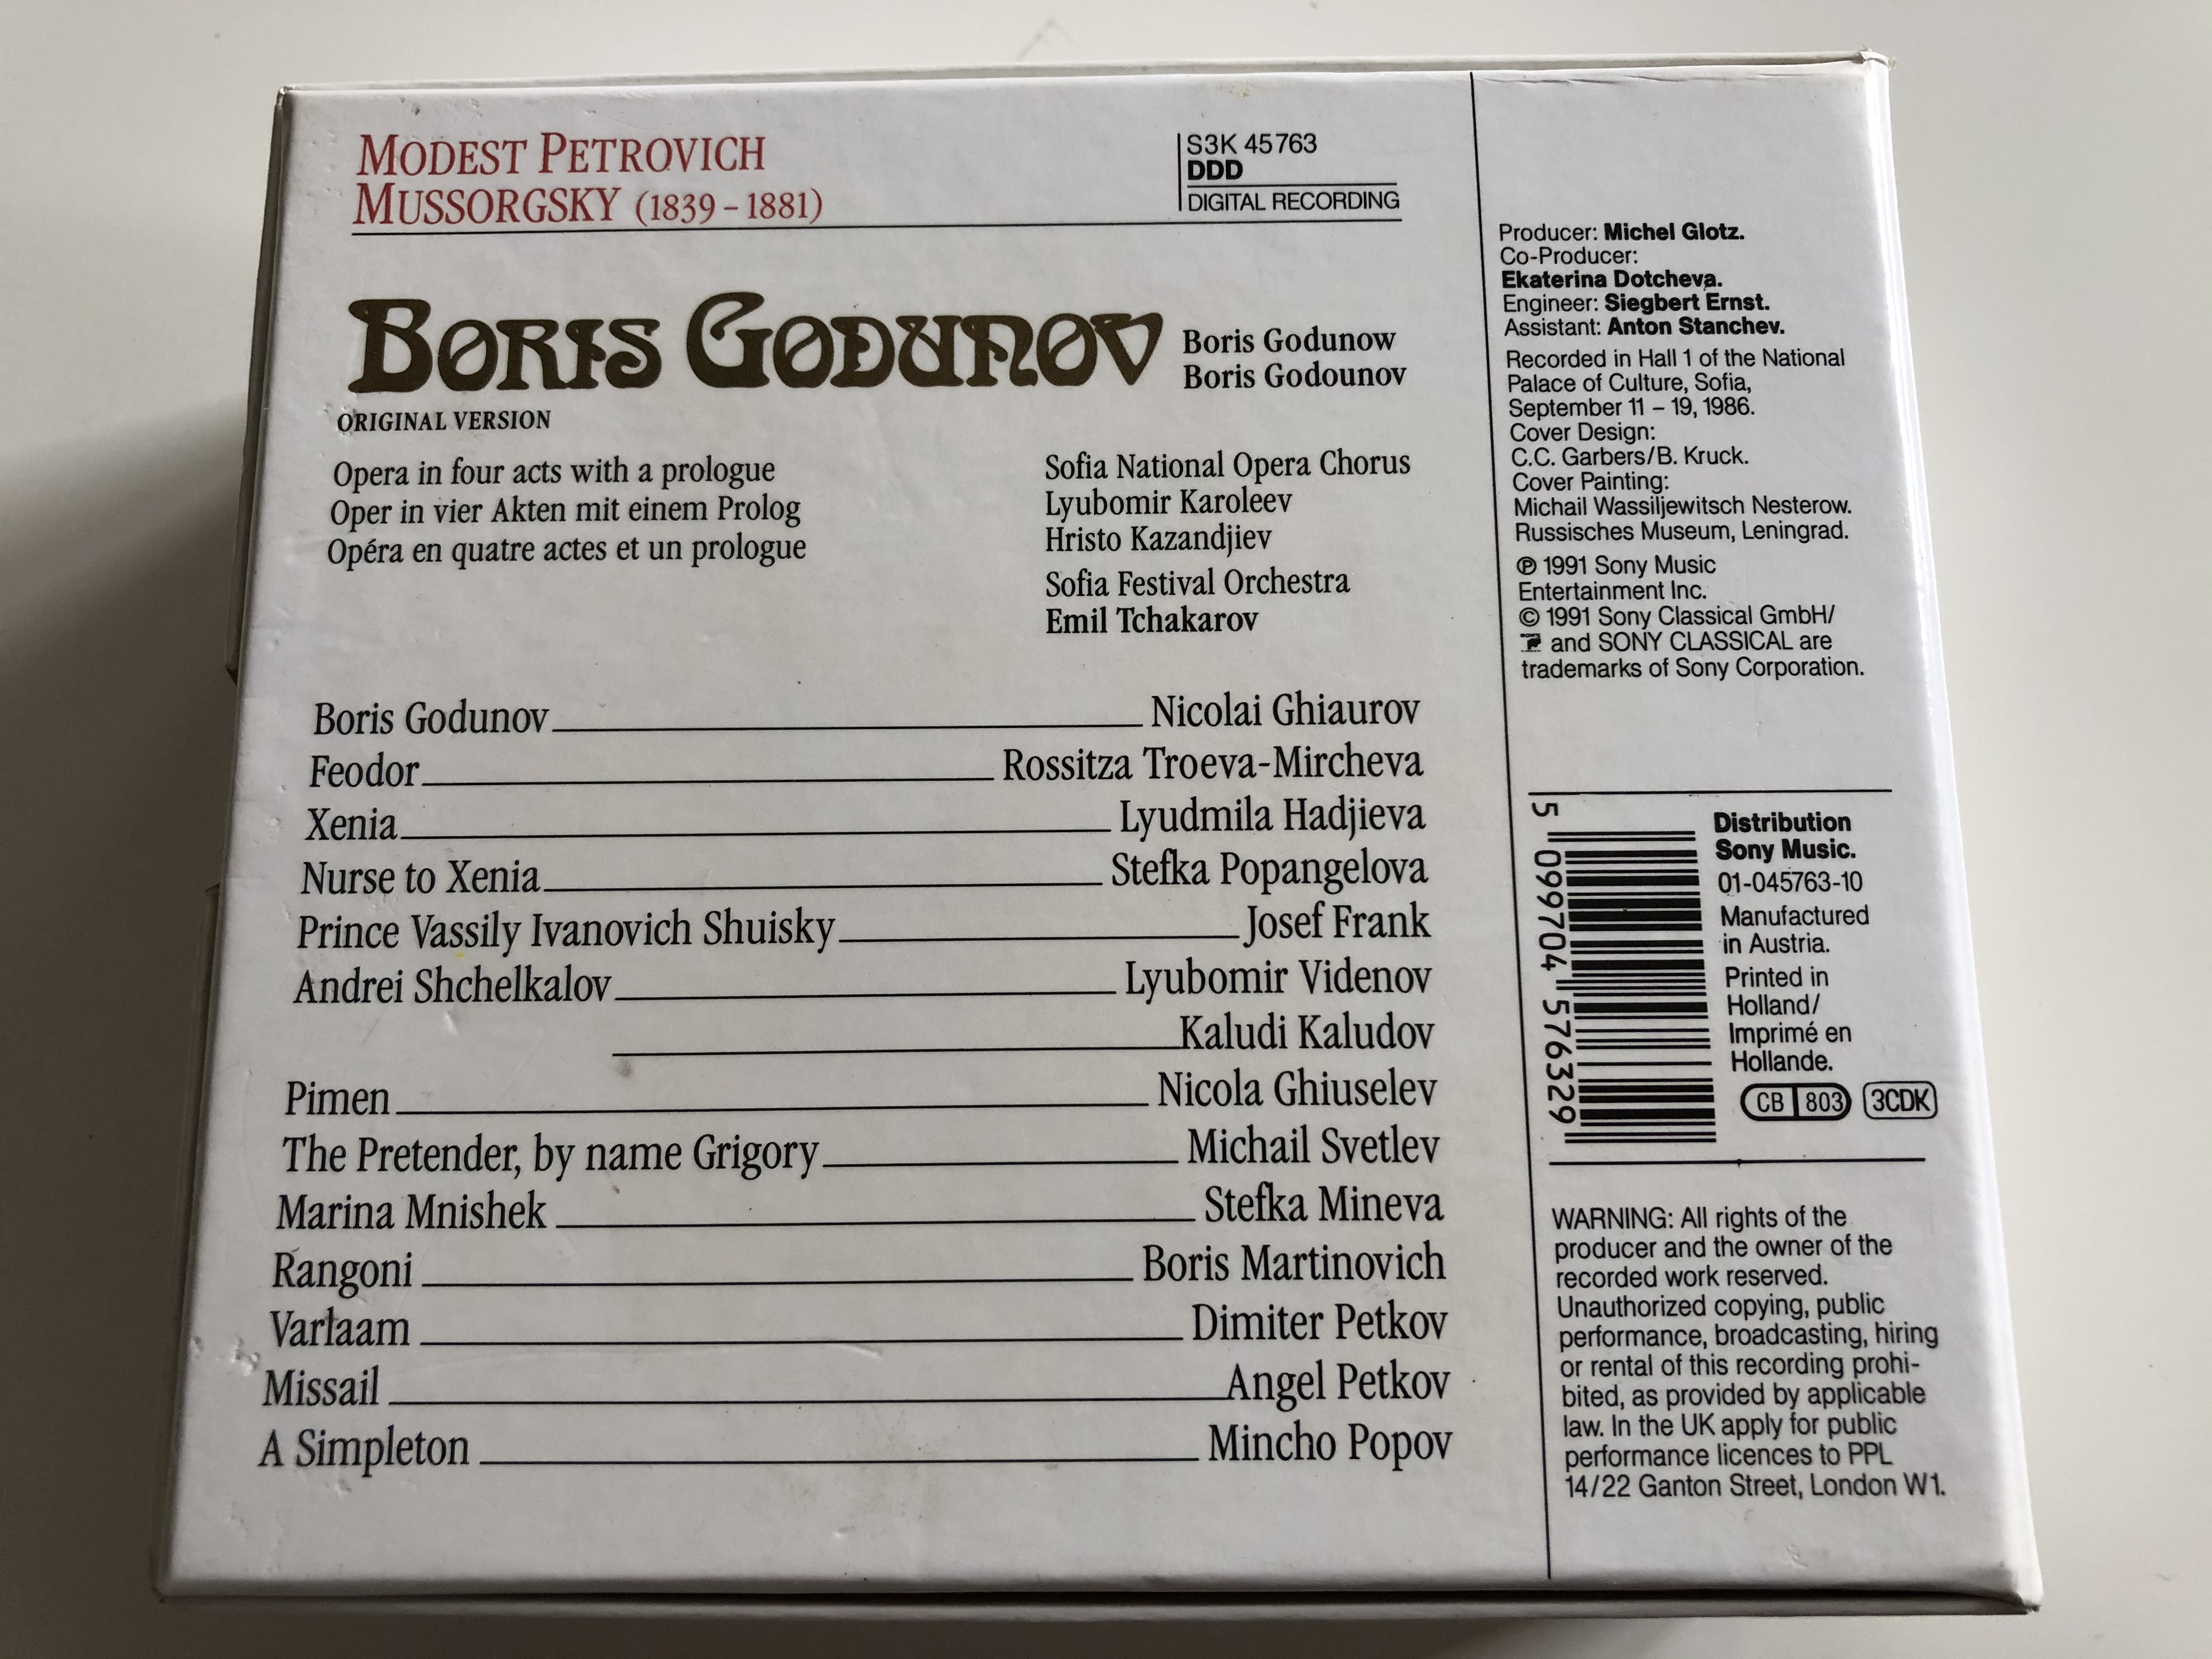 mussorgsky-boris-godunov-nicolai-ghiaurov-stefka-mineva-michail-svetlev-boris-martinovich-josef-frank-nicola-ghiuselev-mincho-popov-sofia-national-opera-chorus-sofia-festival-orchestr-3-.jpg